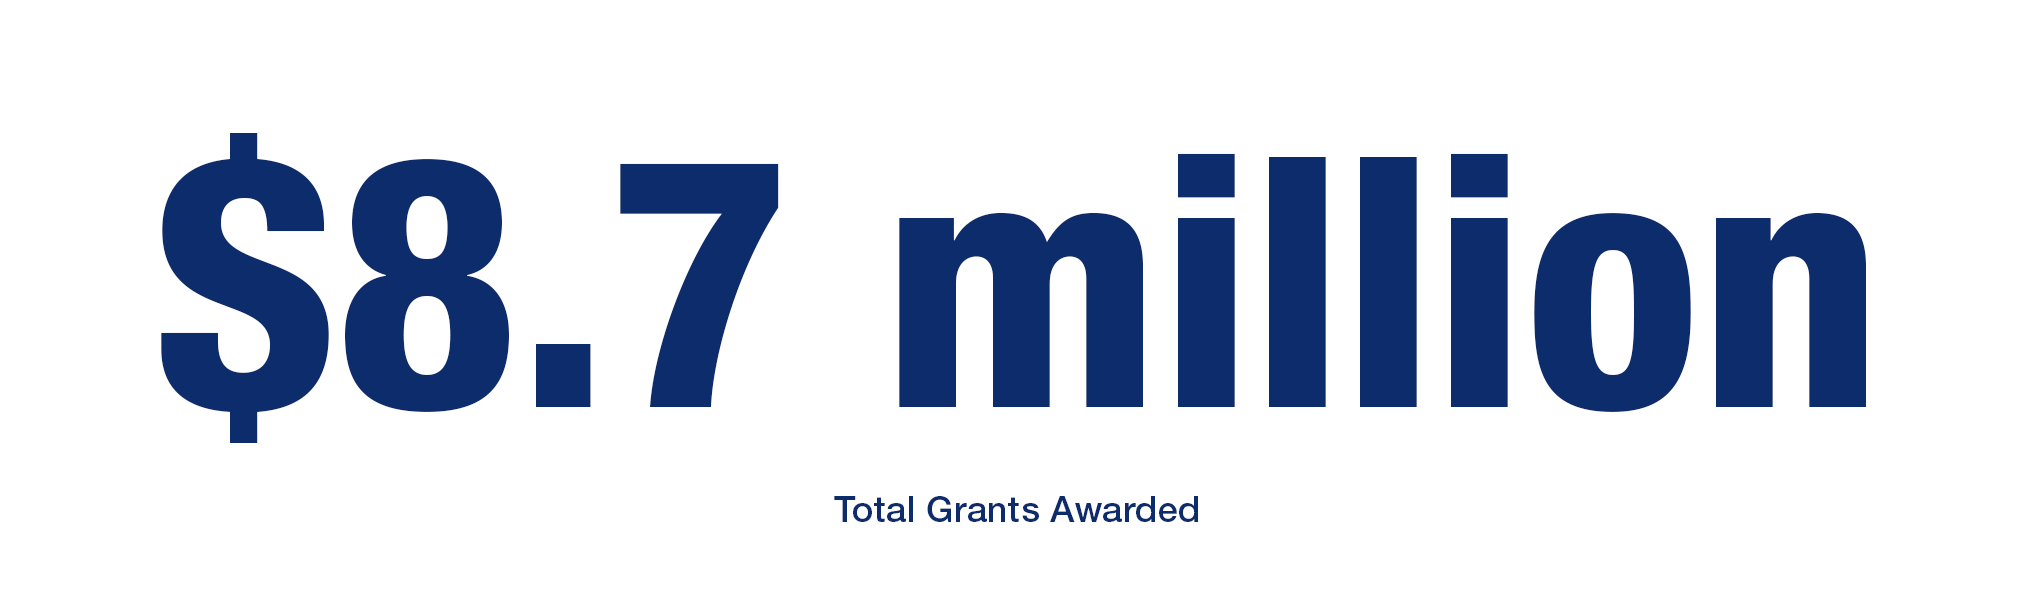 $8.7 million total grants awarded